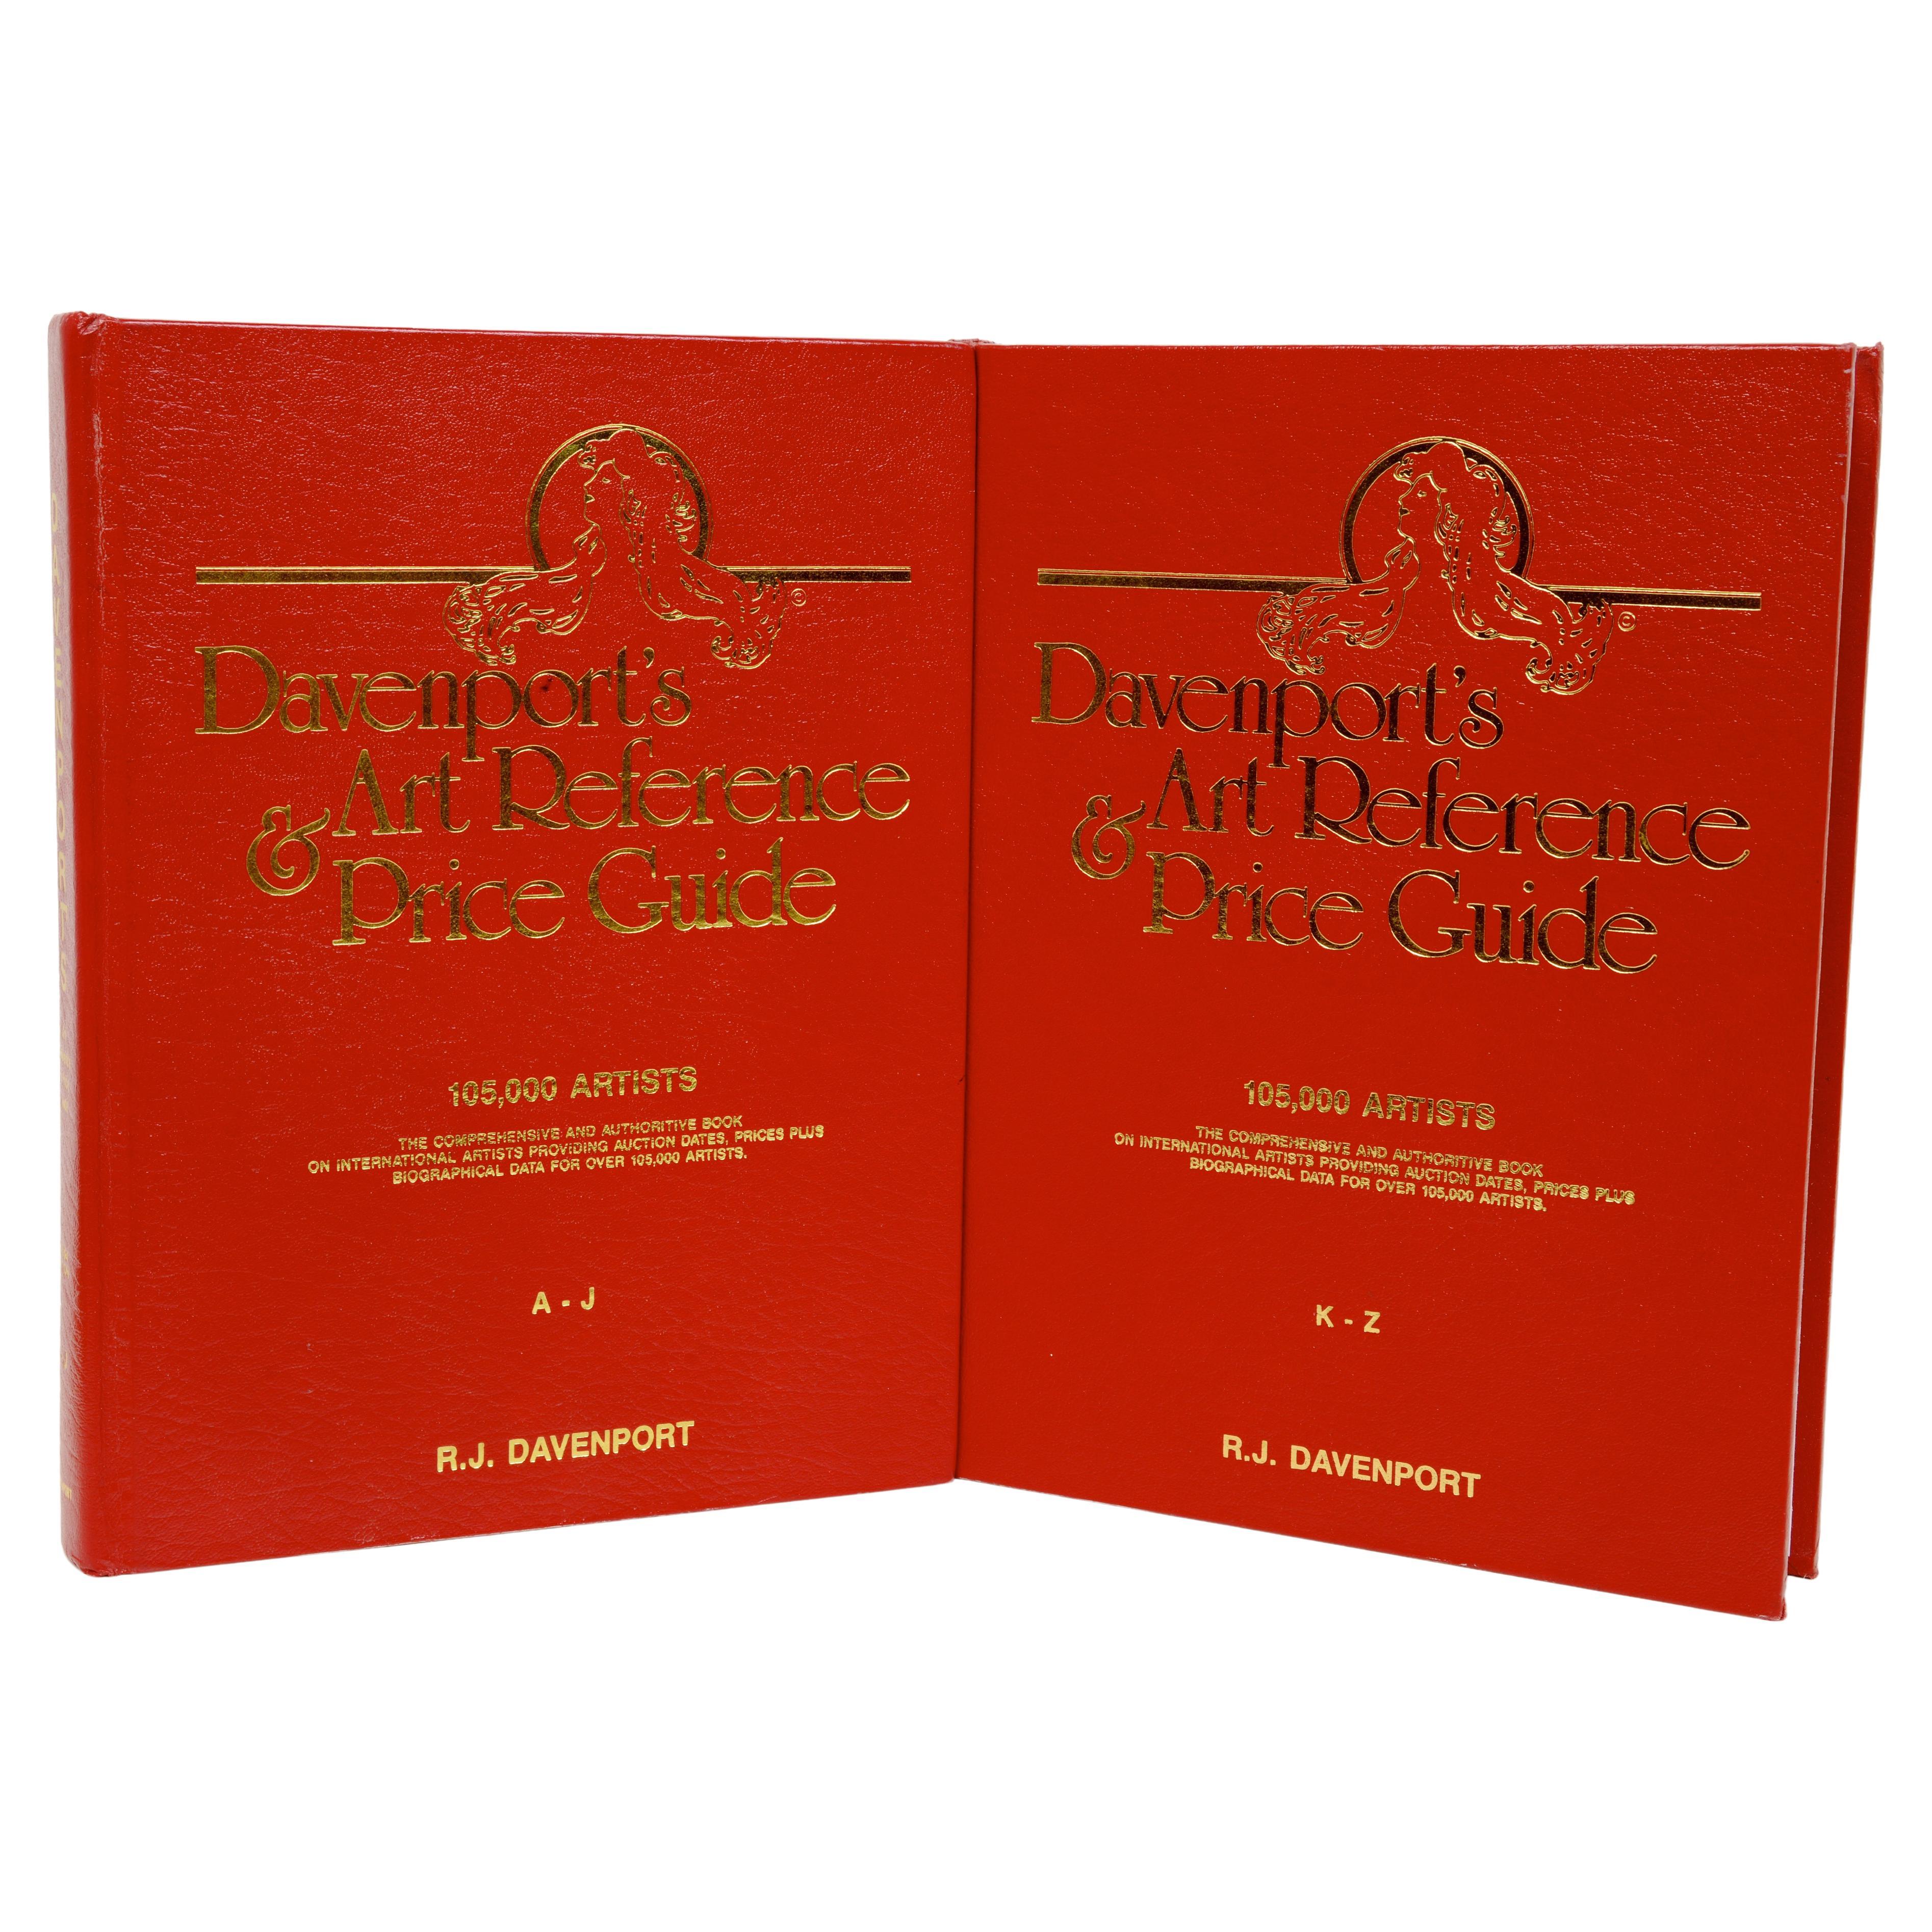 Référence artistique et guide des prix de Davenport en 2 volumes par R. J. Davenport